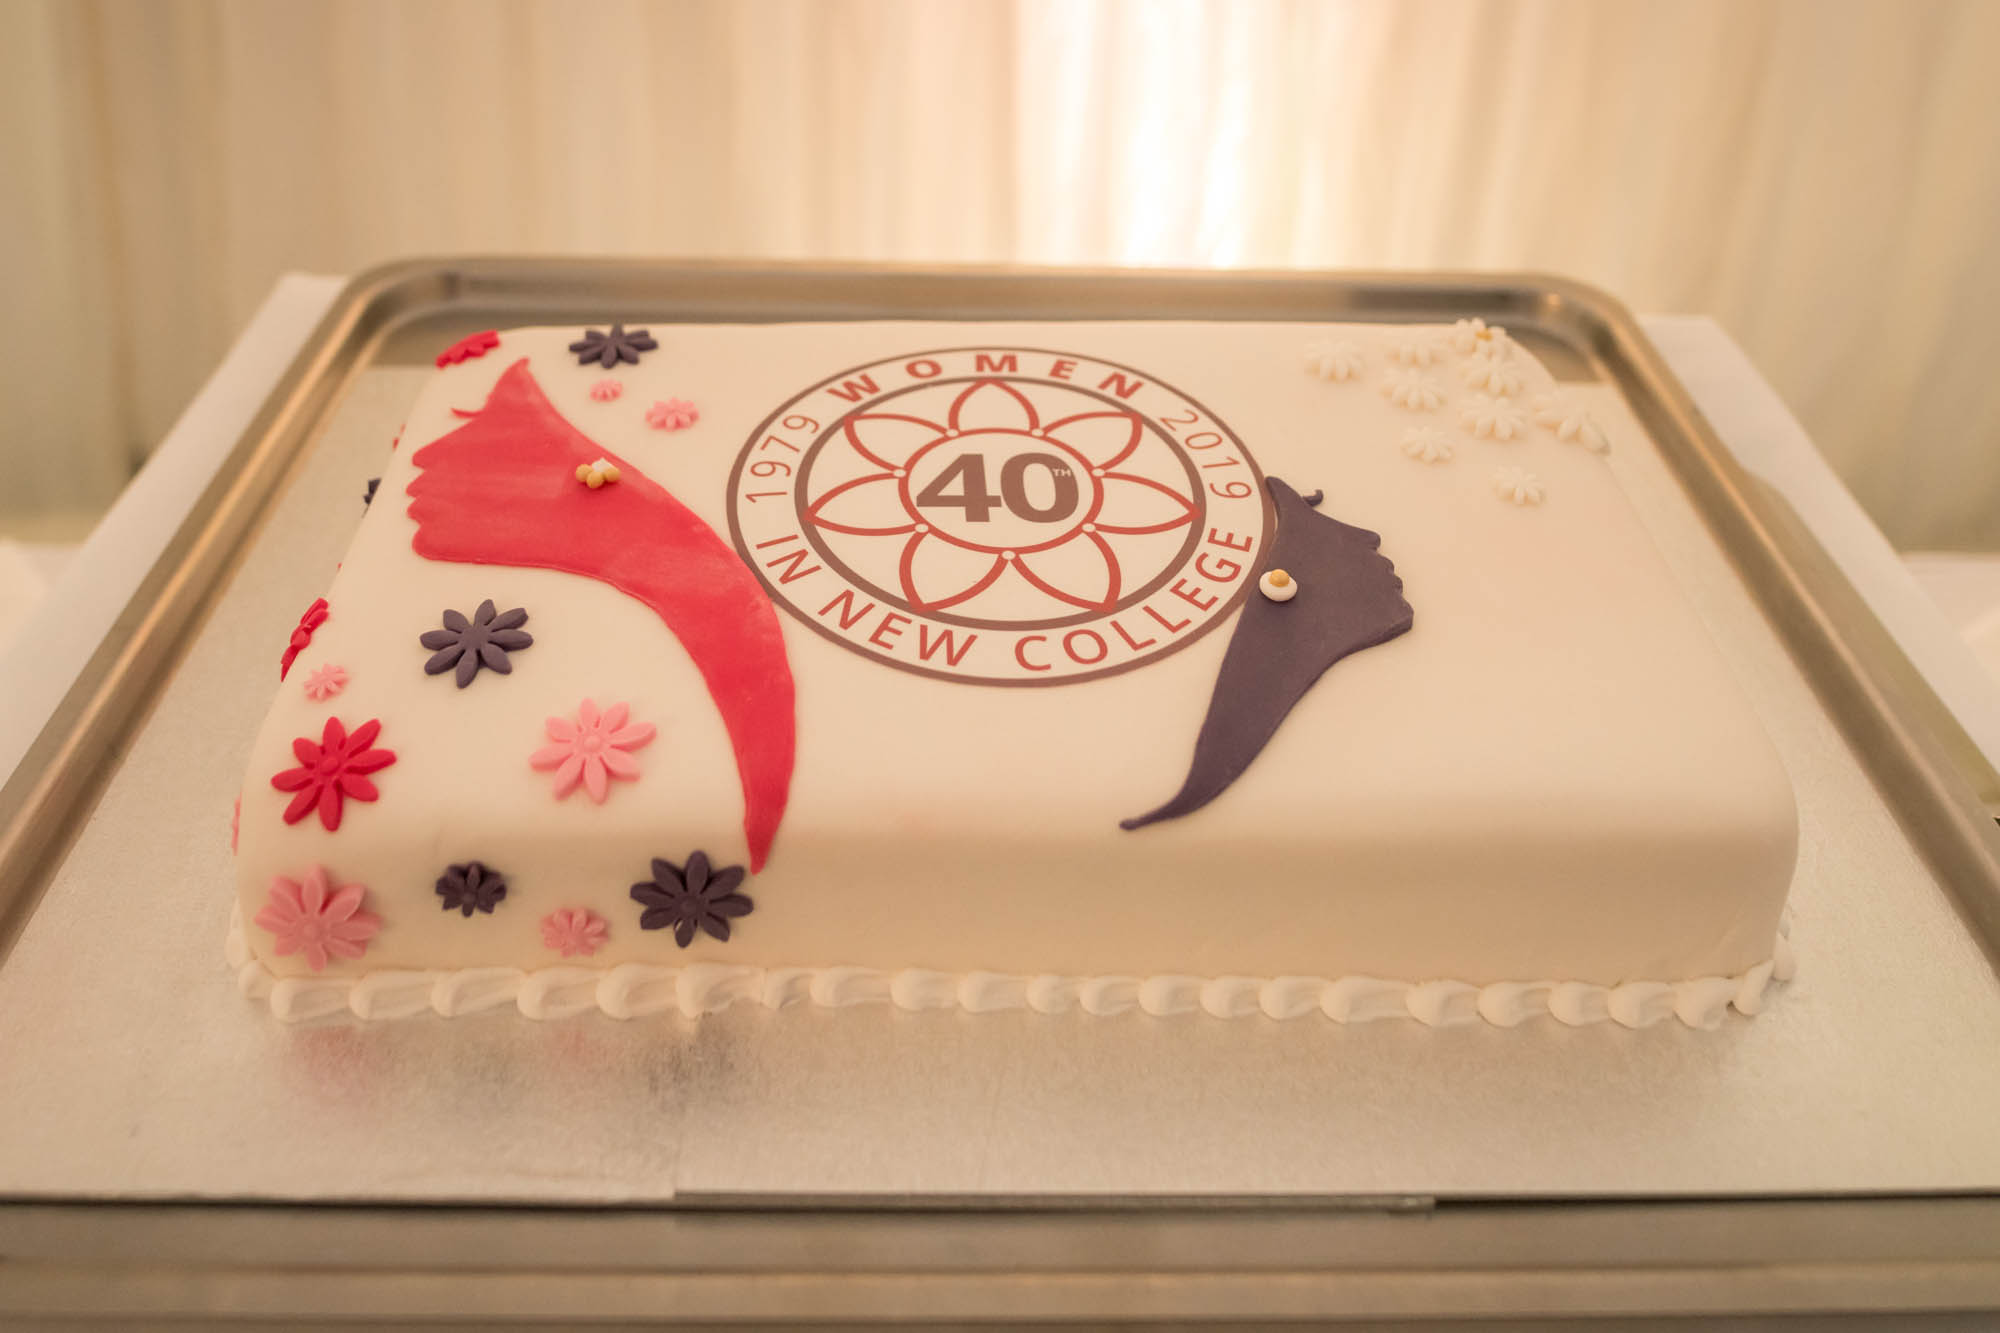 The 40th anniversary cake